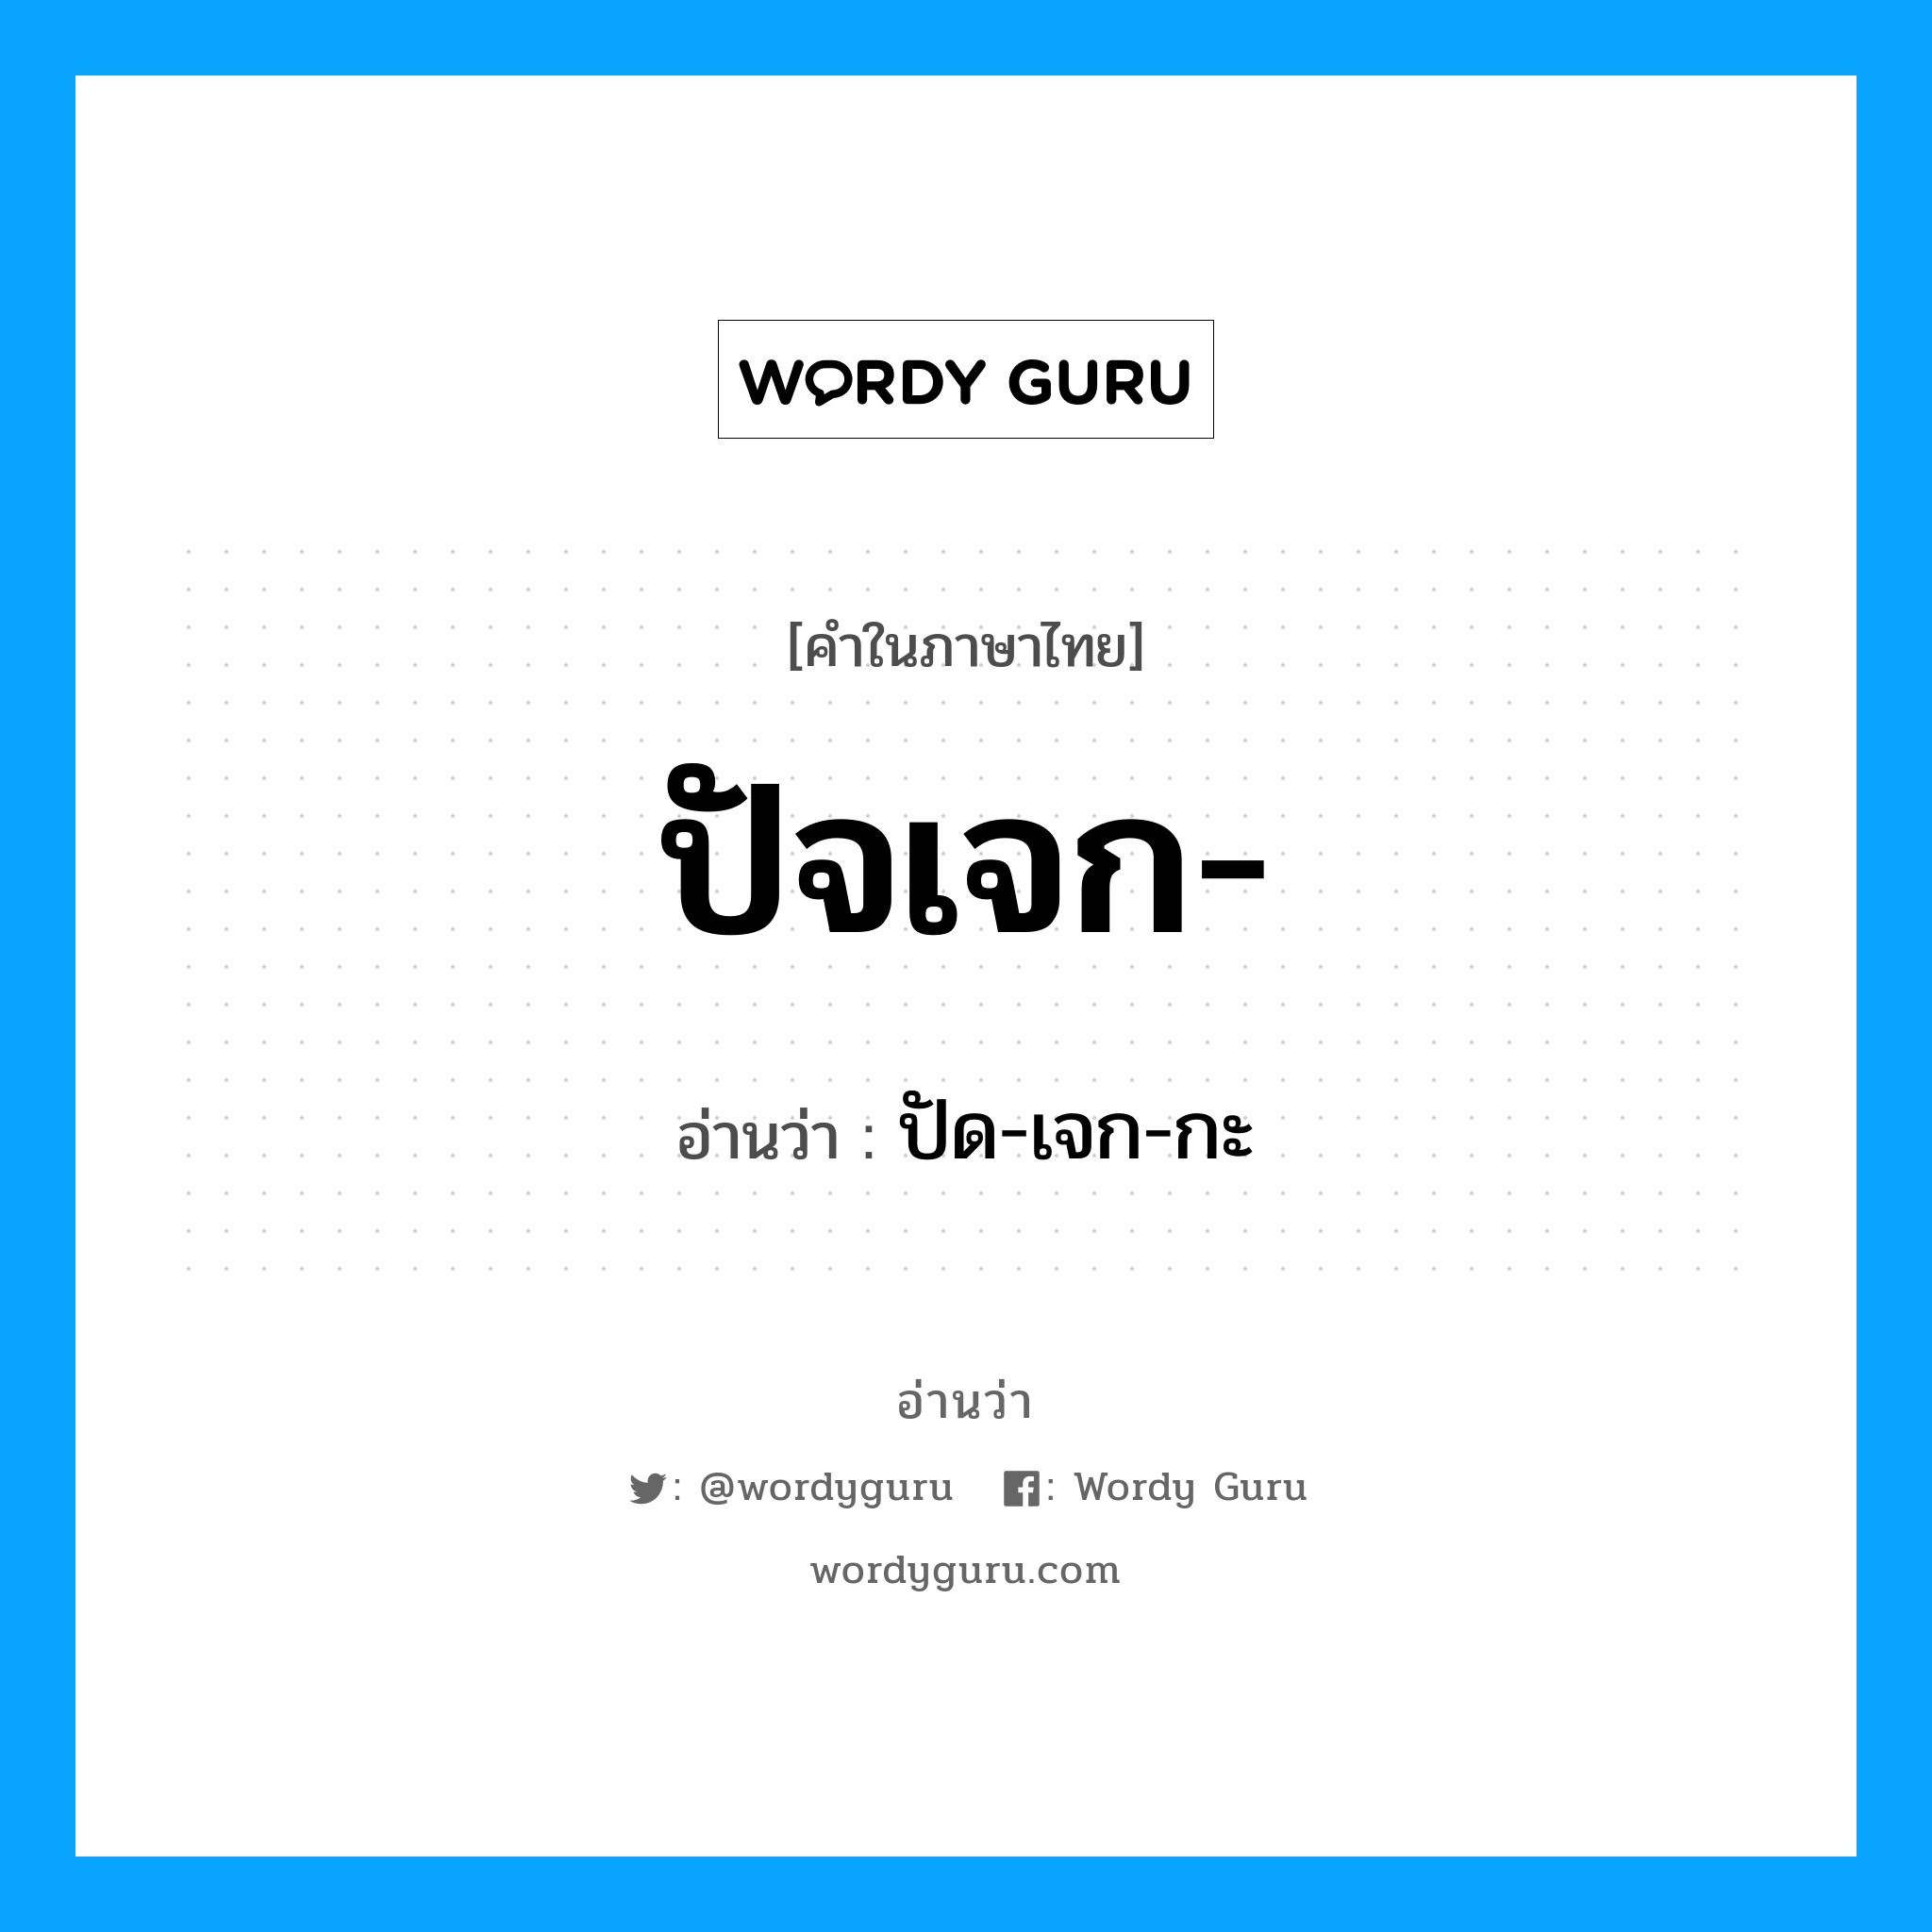 ปัด-เจก-กะ เป็นคำอ่านของคำไหน?, คำในภาษาไทย ปัด-เจก-กะ อ่านว่า ปัจเจก-